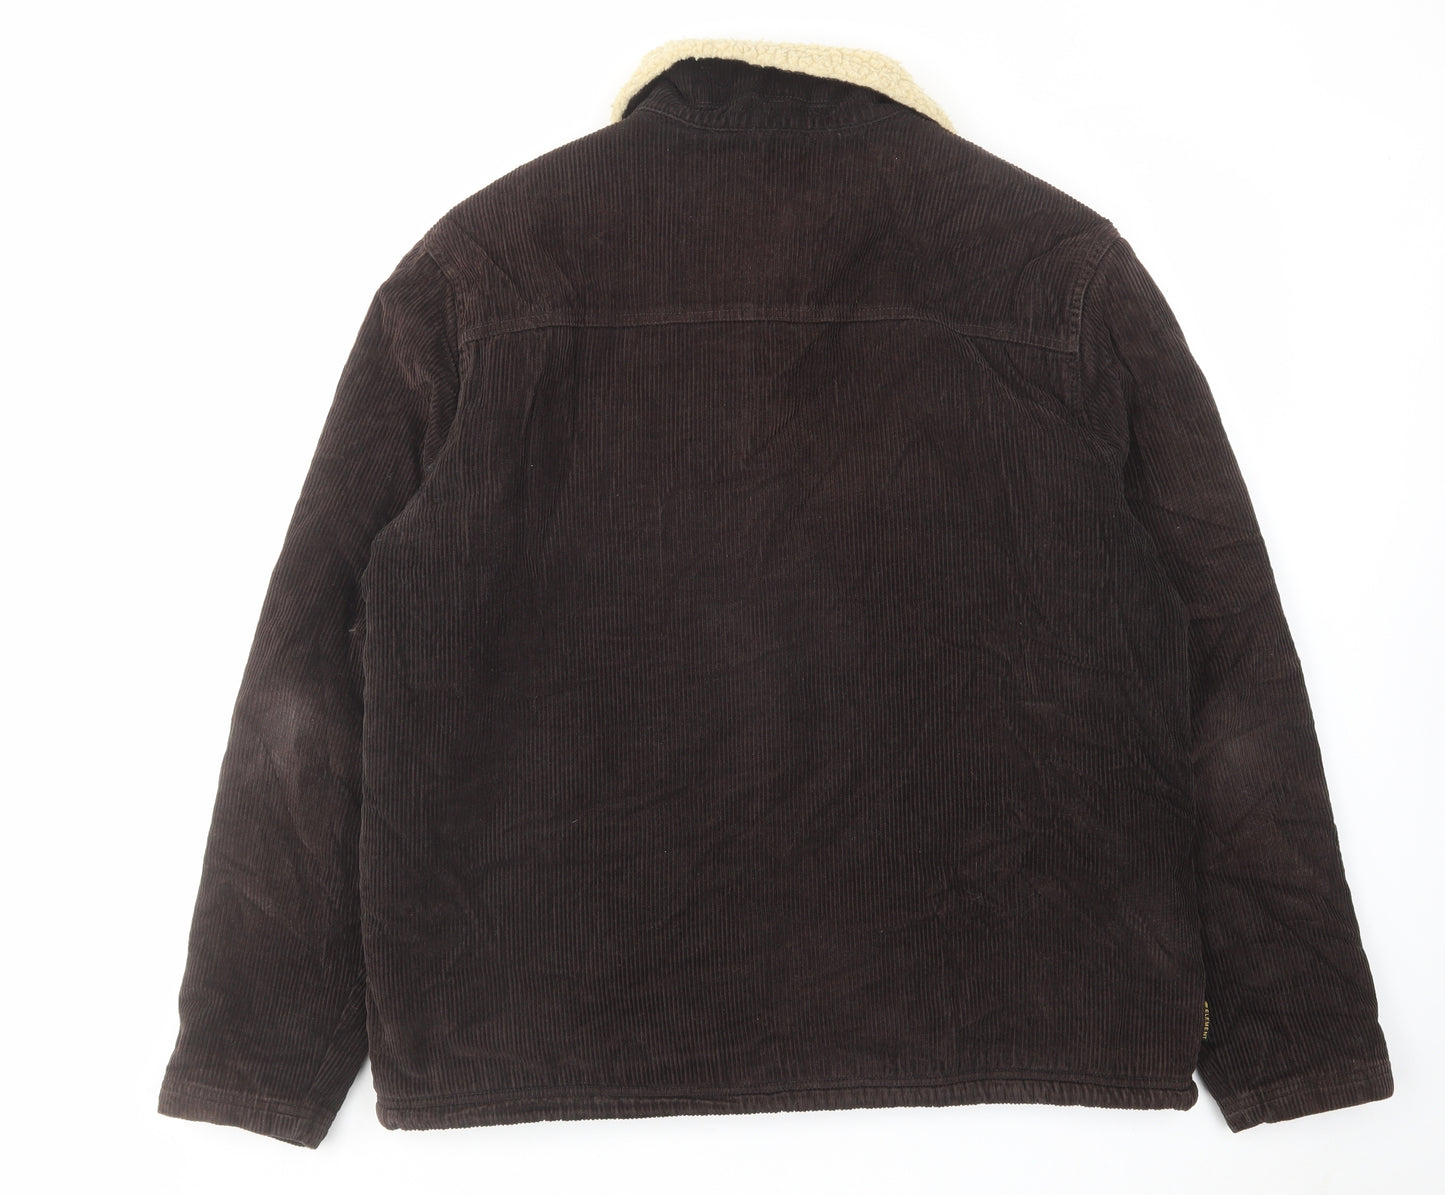 Element Mens Brown Jacket Coat Size L Button